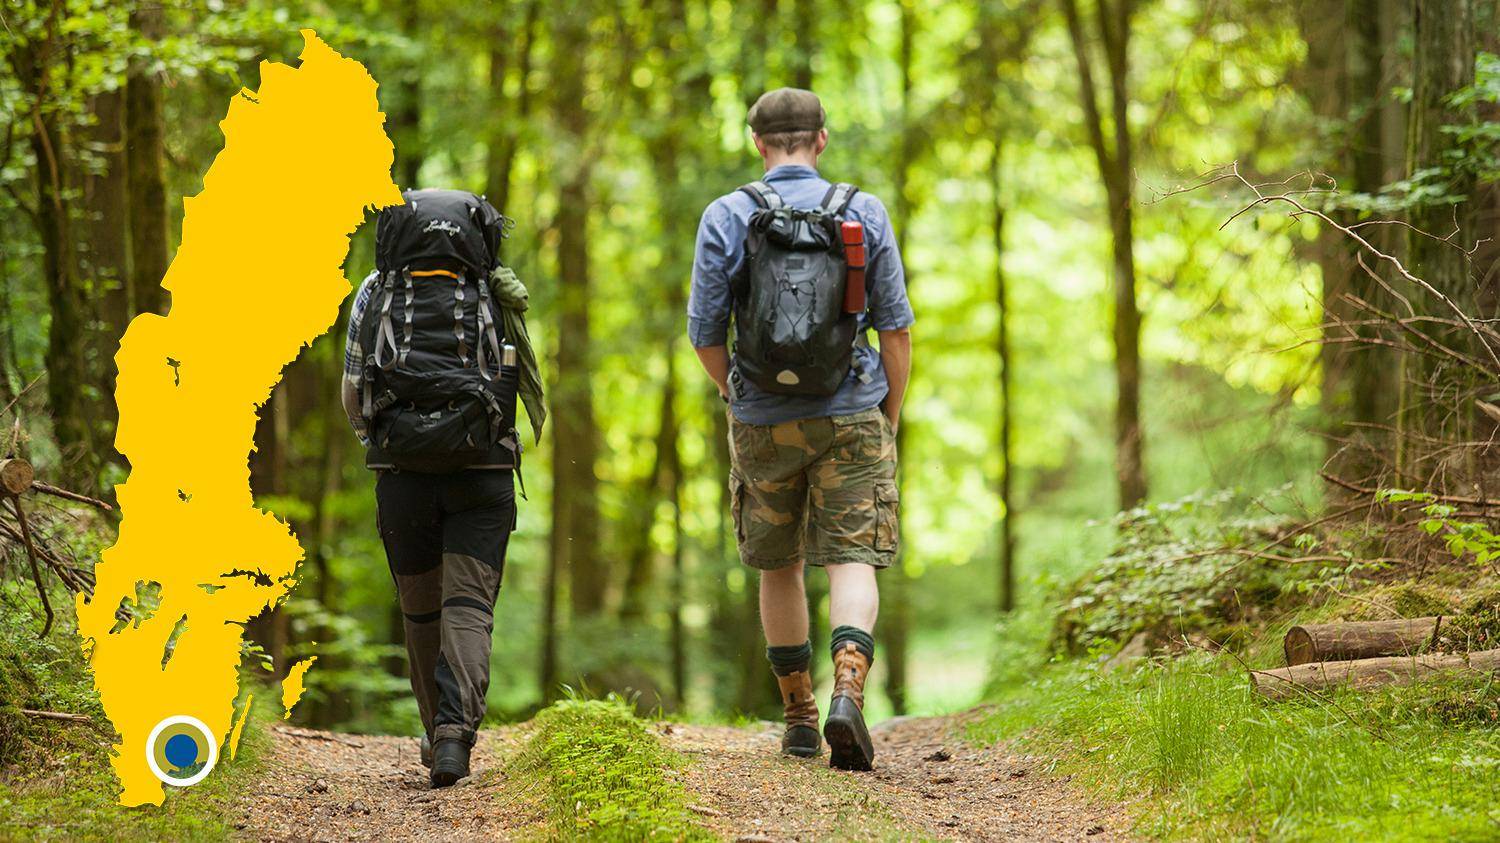 Zwei Leute mit Rucksäcken wandern in einem Wald. Das Bild zeigt eine gelbe Karte von Schweden mit einer Markierung, die die Lage von Hemsjö anzeigt.